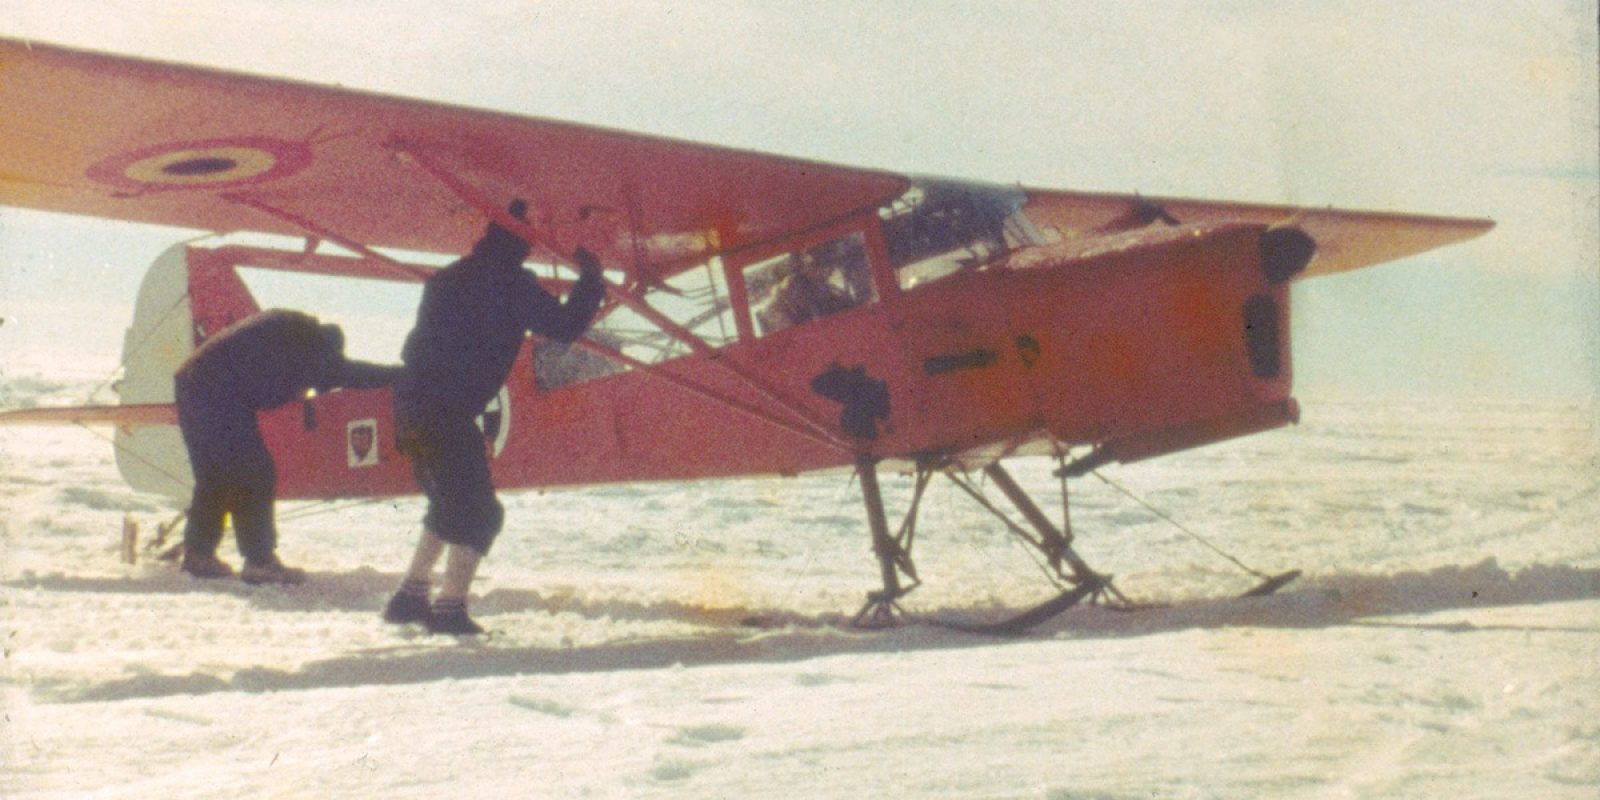 En plein Antarctique lors de la 1ère Année géophysique internationale 1957-1958, l’Auster A-2 effectue un test moteur retenu par des aides car, monté sur skis, cet appareil n’a pas de freins. Cette image est extraite d’un film 16 mm, ce qui explique son léger flou. (Gaston de Gerlache de Goméri via Jean-Claude Heurter)